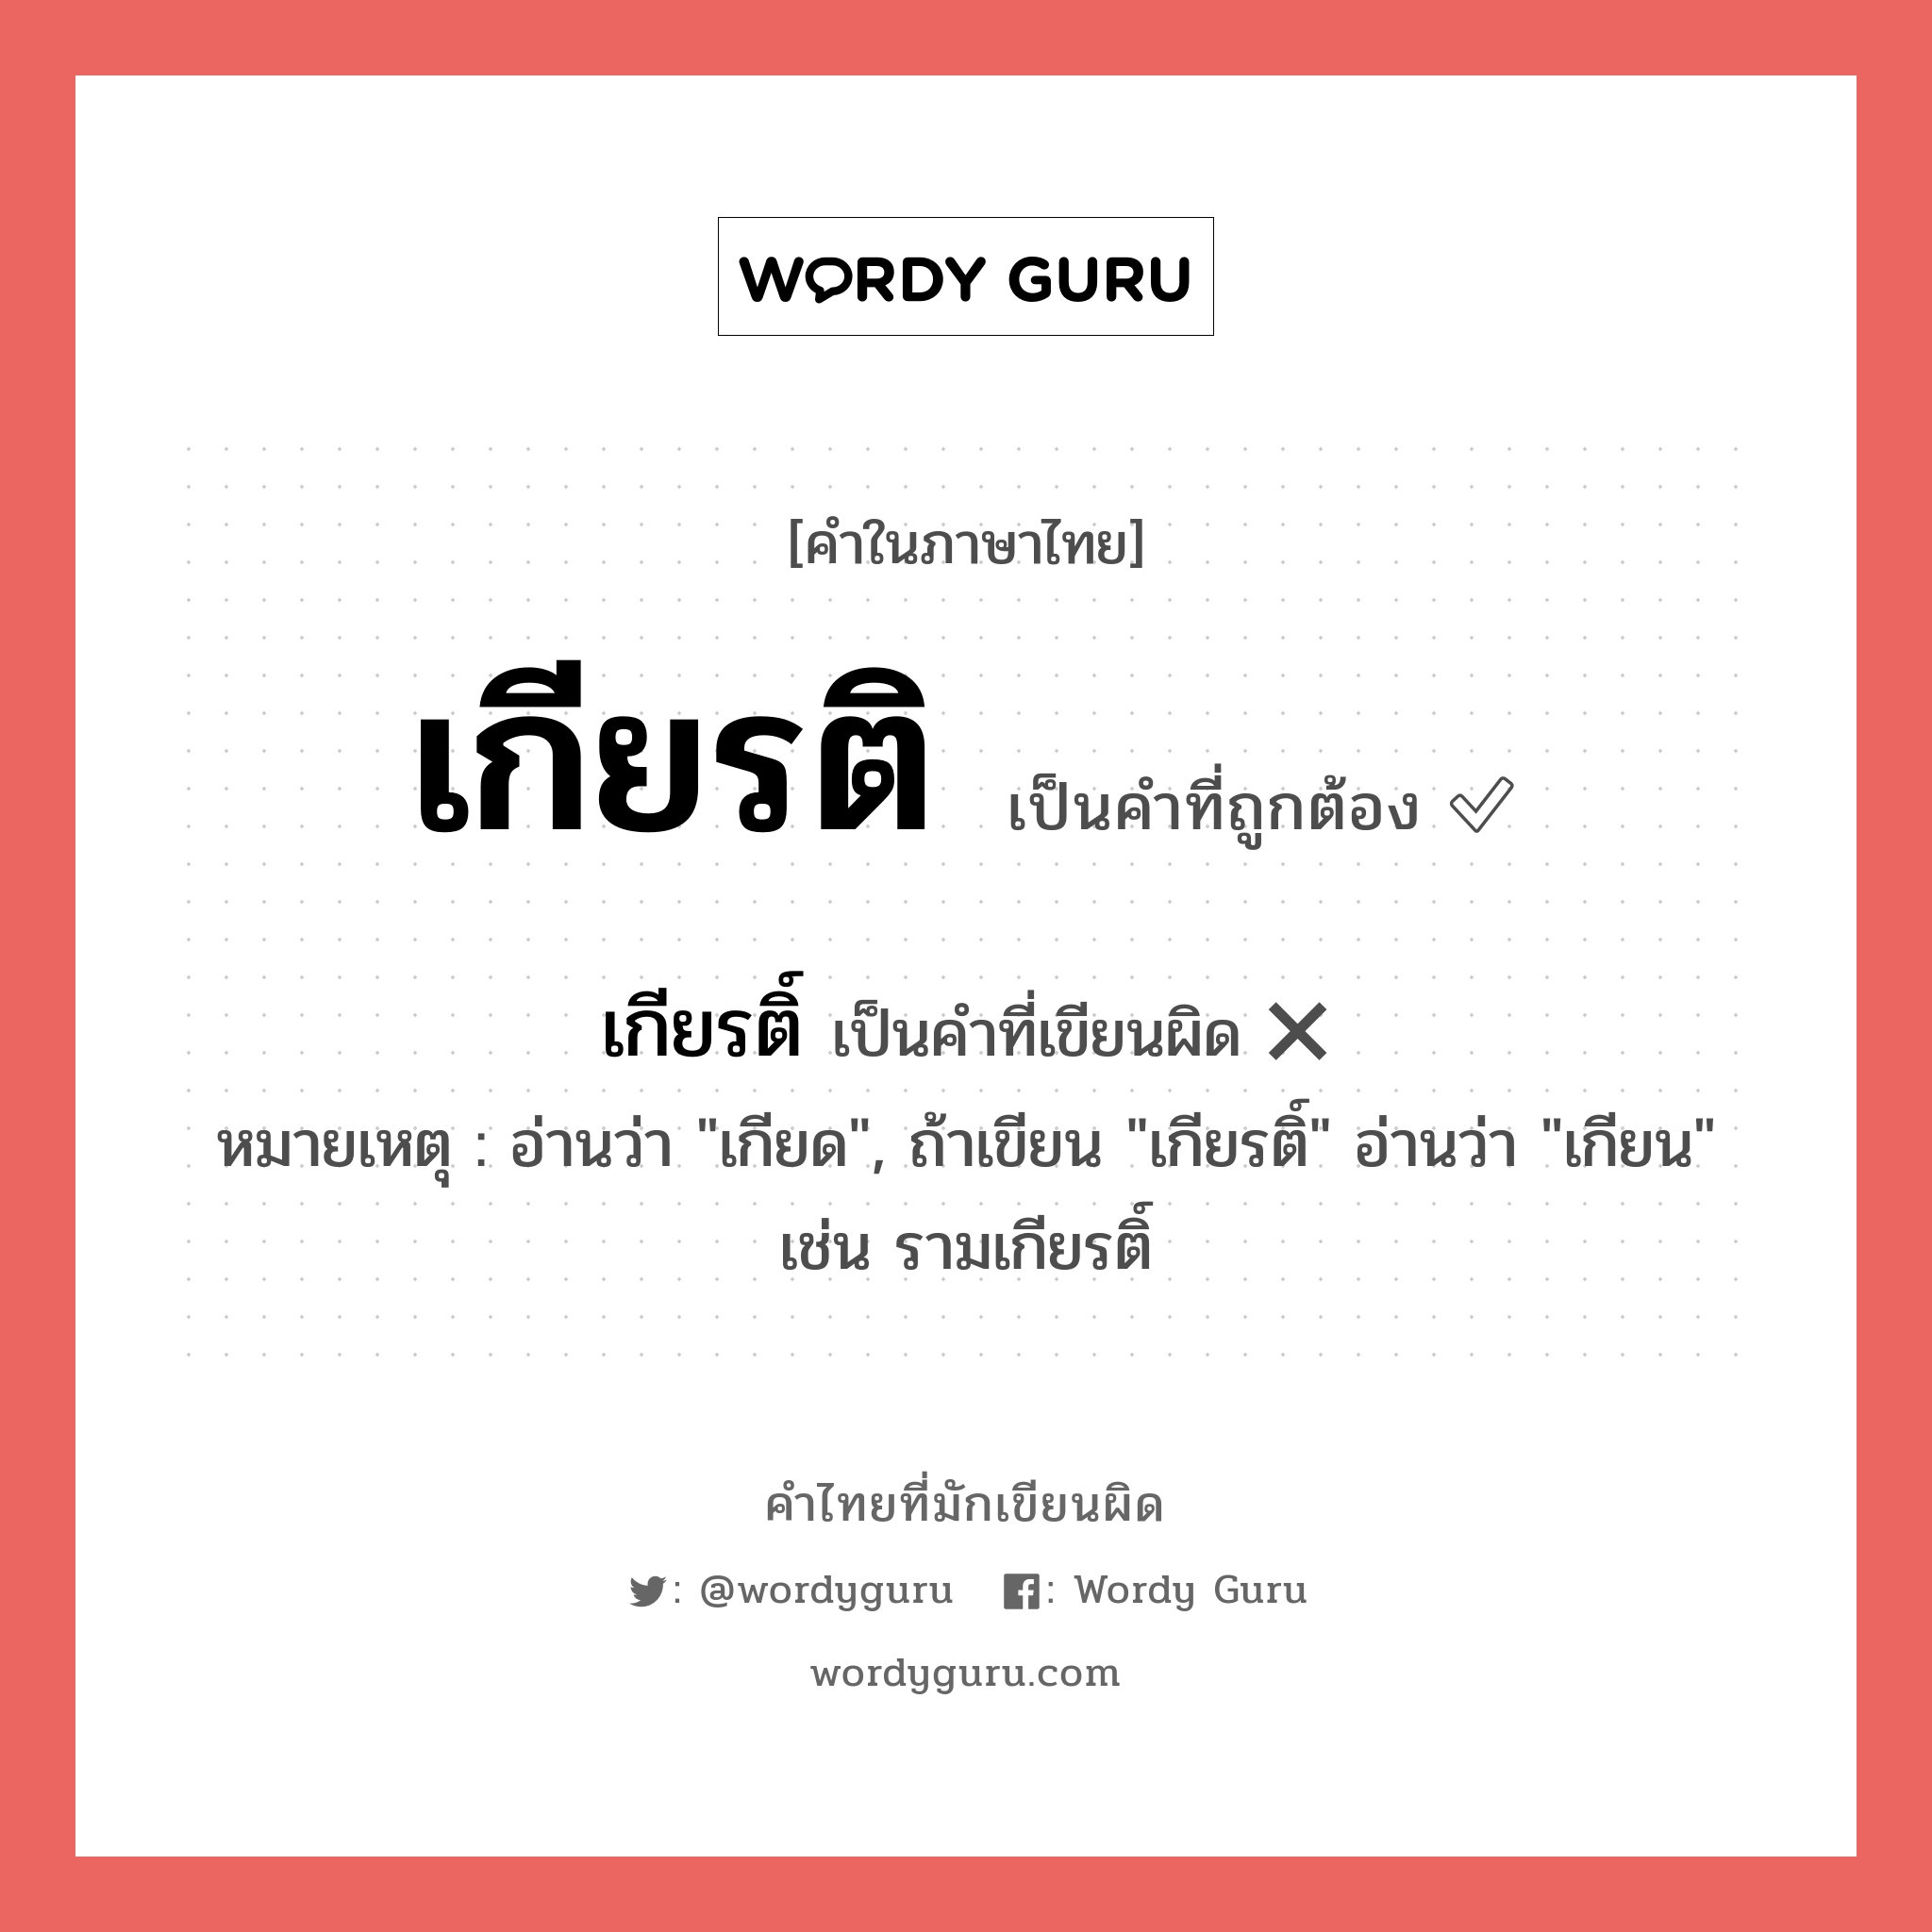 เกียรติ์ หรือ เกียรติ คำไหนเขียนถูก?, คำในภาษาไทยที่มักเขียนผิด เกียรติ์ คำที่ผิด ❌ เกียรติ หมายเหตุ อ่านว่า "เกียด", ถ้าเขียน "เกียรติ์" อ่านว่า "เกียน" เช่น รามเกียรติ์